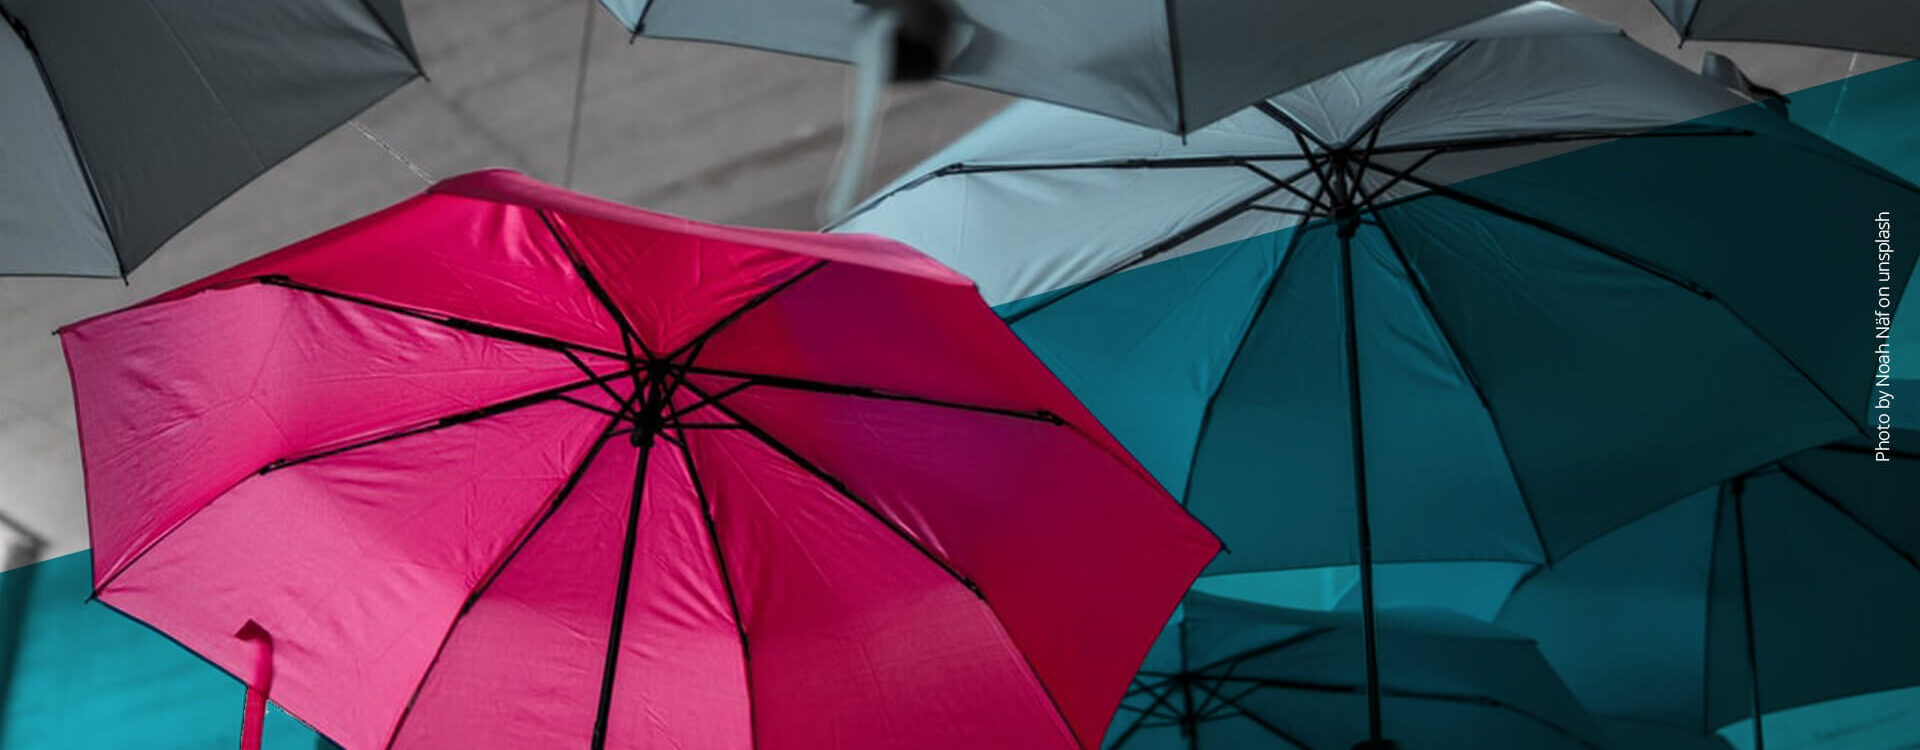 Pinker Regenschirm im Vordergrund, graue Regenschirme im Hintergrund